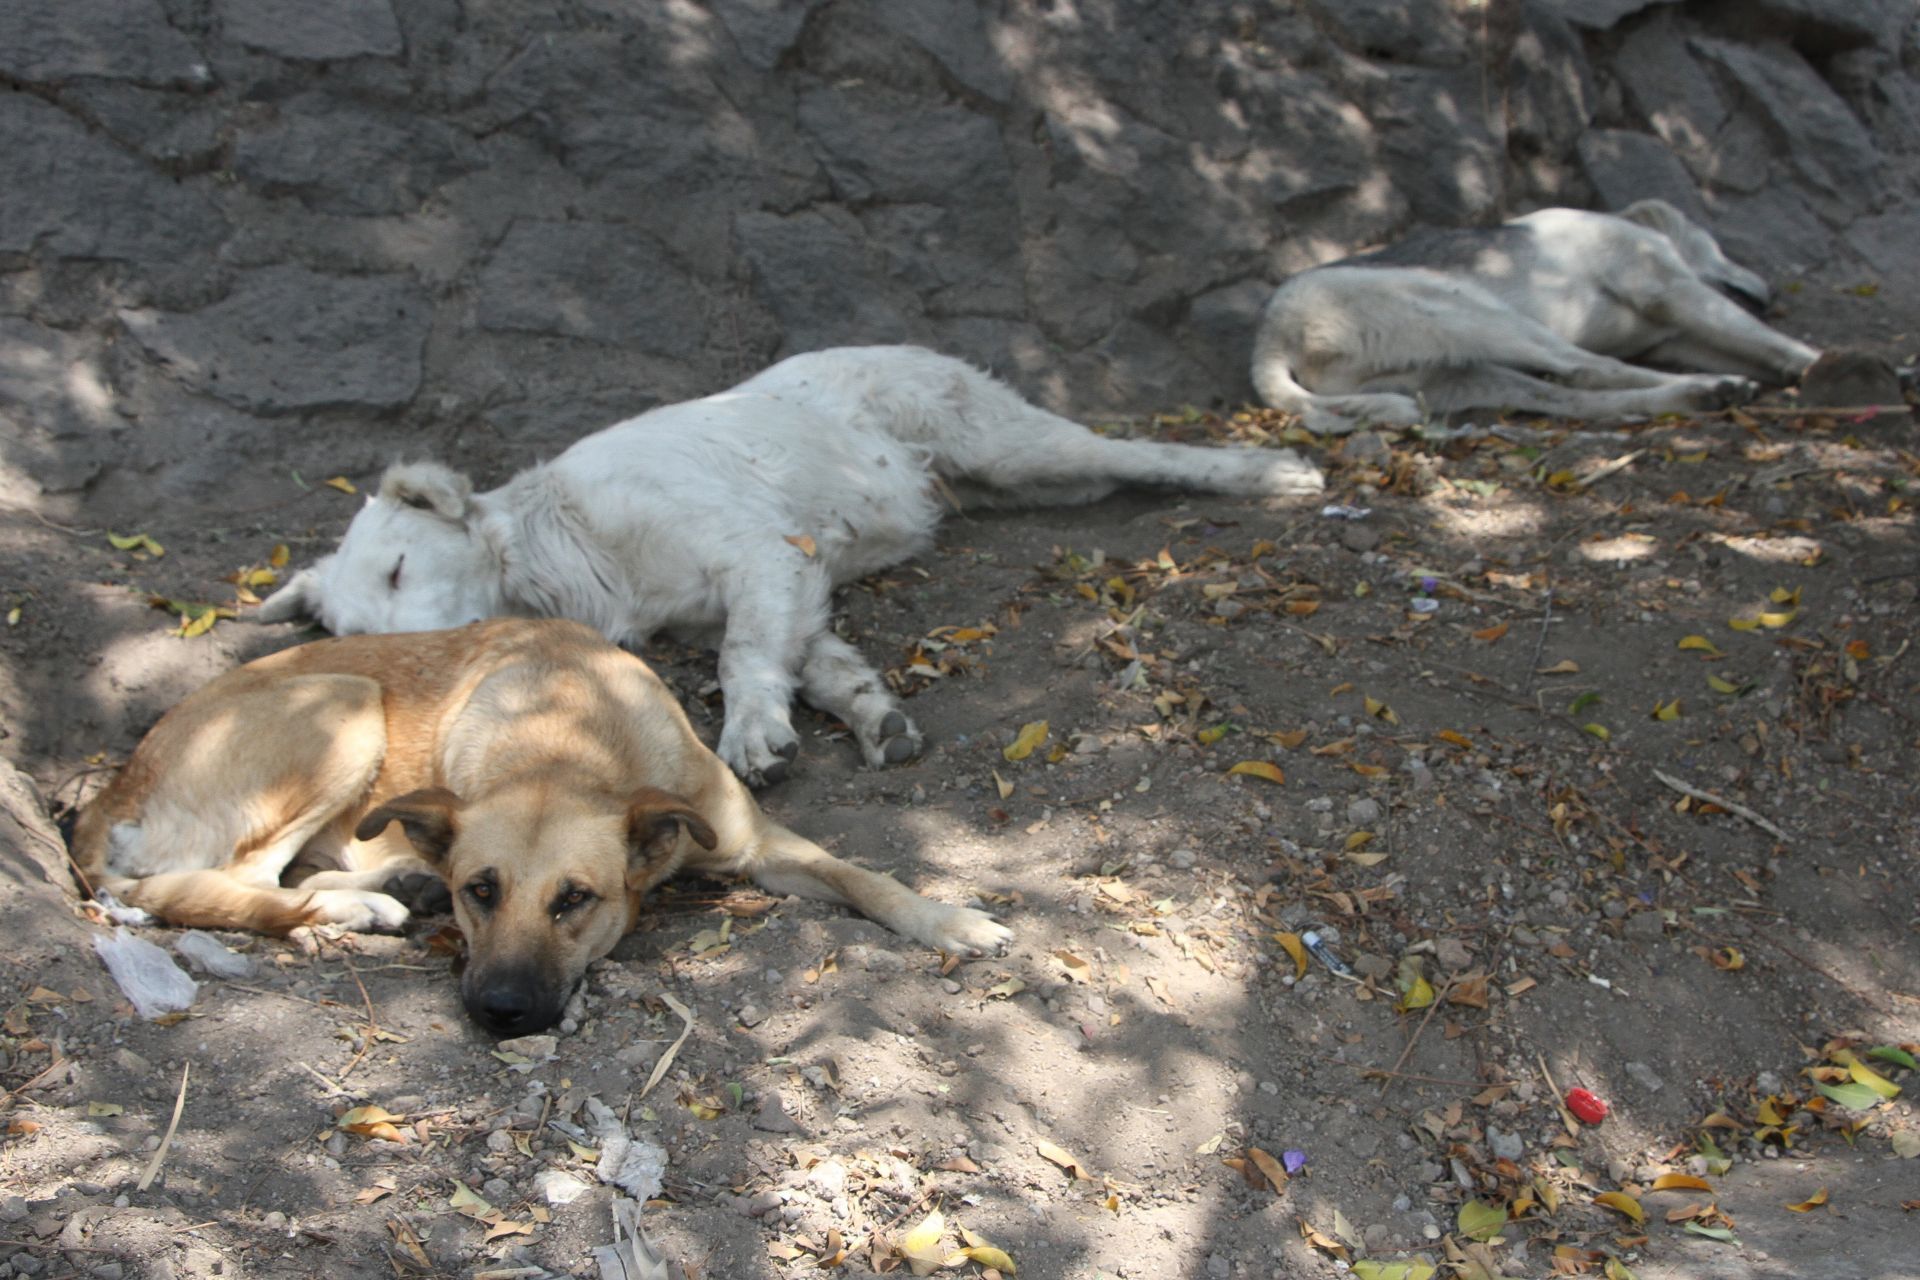 Mi México: Golpean a rescatista que quería ayudar a un perrito y policías le dicen que "él se lo buscó"